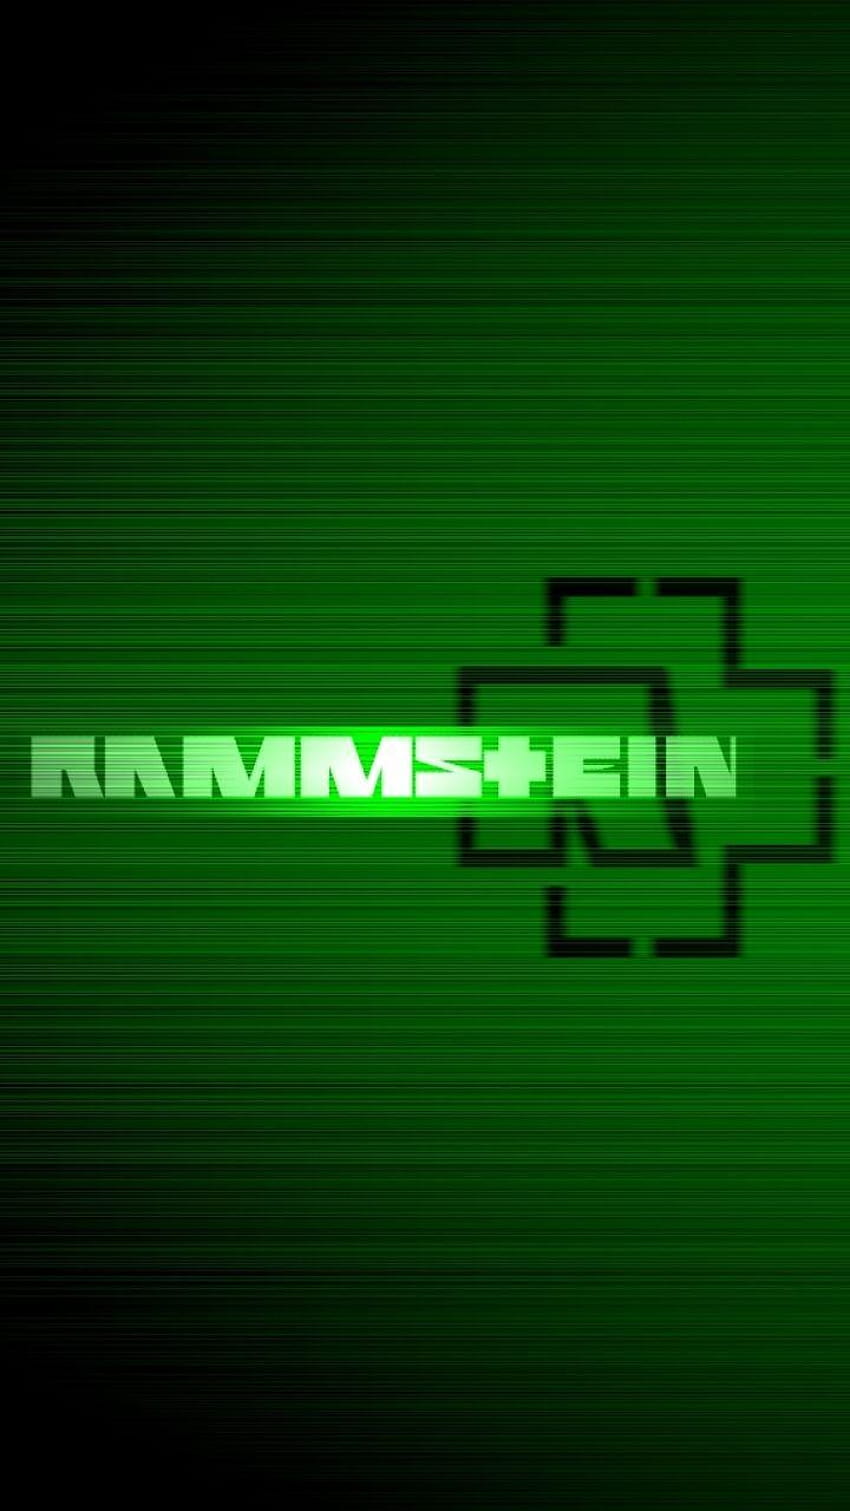 Muzyka/Rammstein, logo Rammstein Tapeta na telefon HD